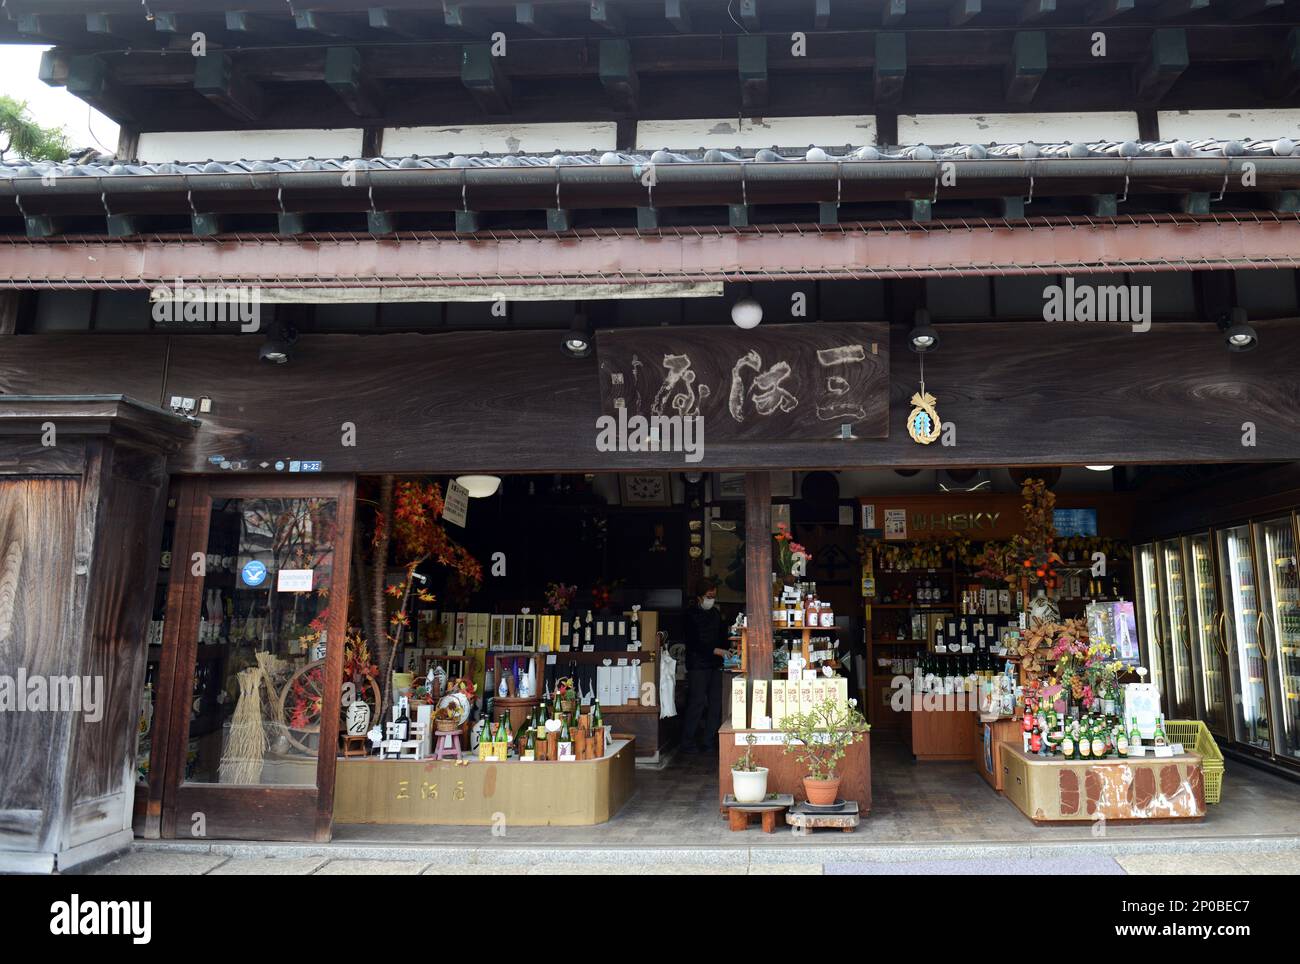 Un magasin d'alcool japonais situé dans une ancienne maison traditionnelle en bois à Kamakura, Japon. Banque D'Images